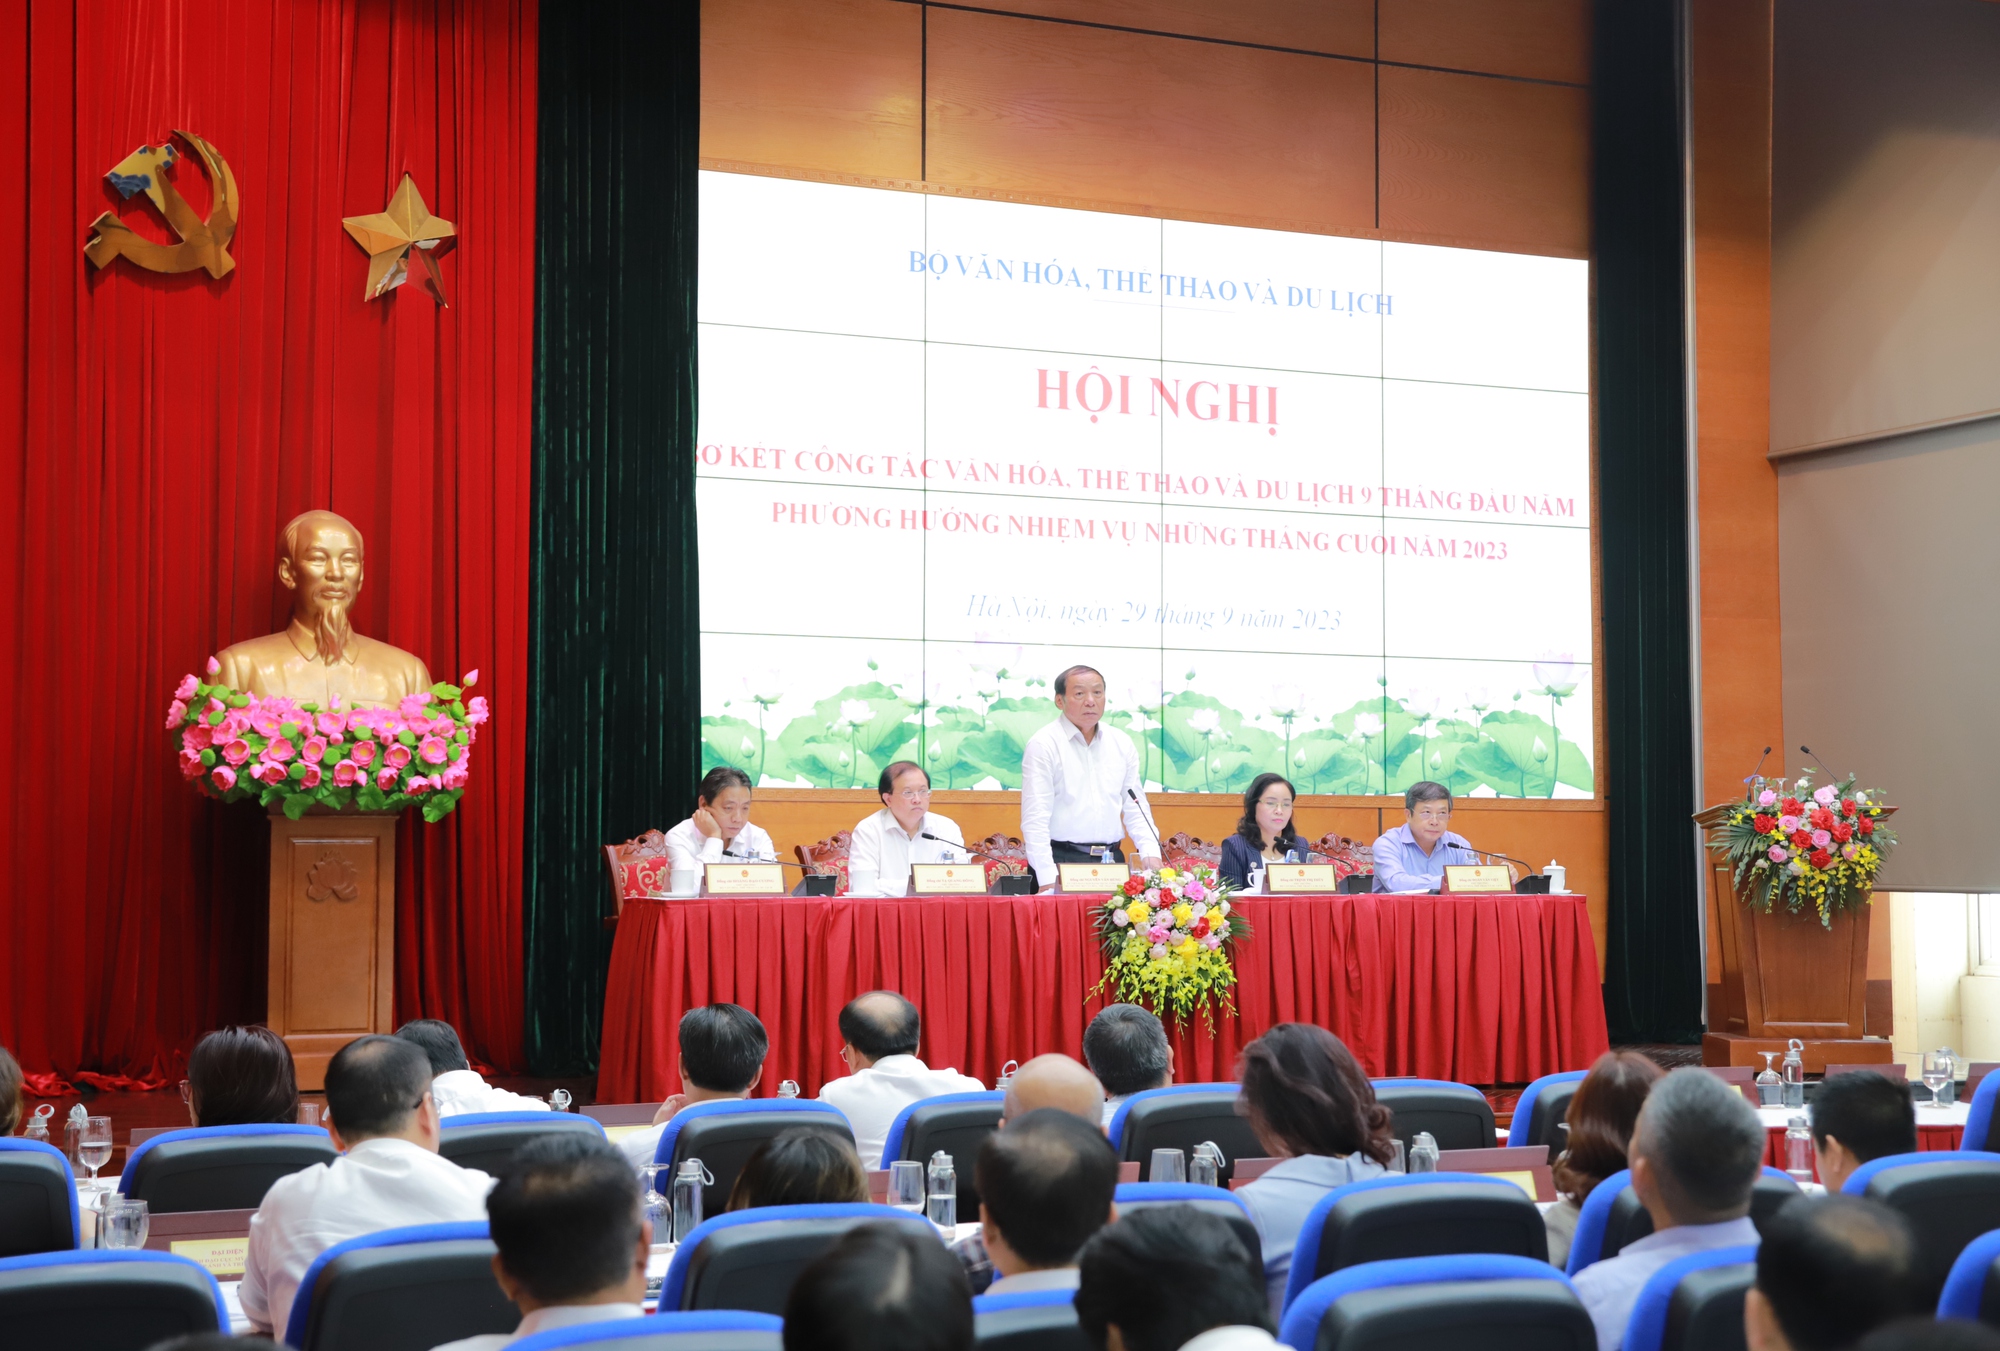 Bộ trưởng Nguyễn Văn Hùng: Trách nhiệm, gương mẫu, đoàn kết, sáng tạo để tăng tốc về đích trong những tháng cuối năm - Ảnh 2.